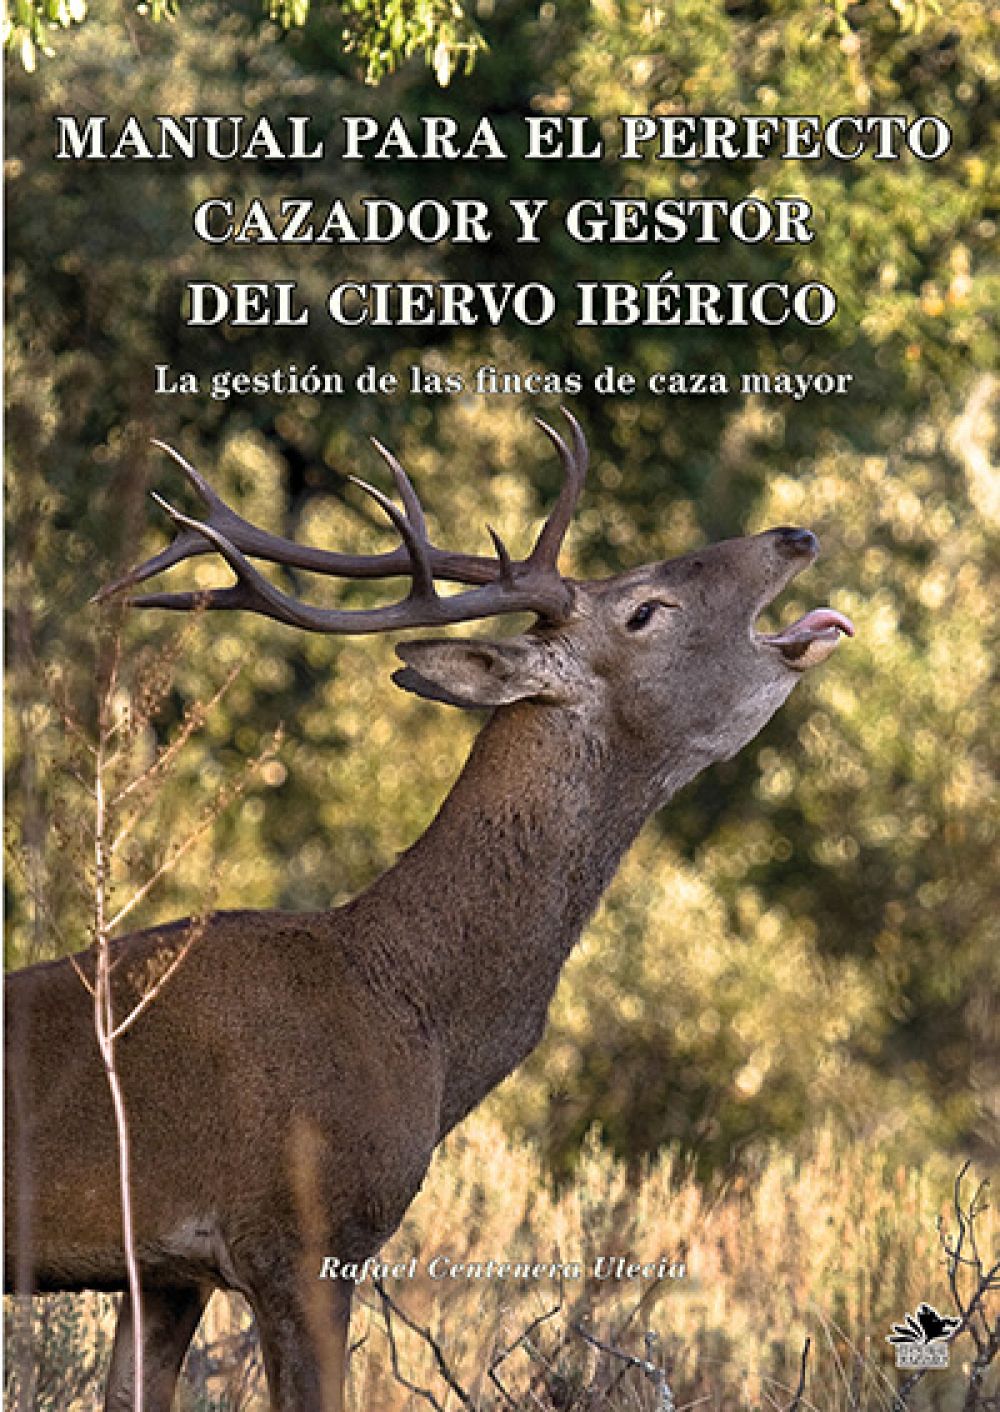 Manual para el Perfecto Cazador de Ciervo Ibérico, de Rafael Centenera